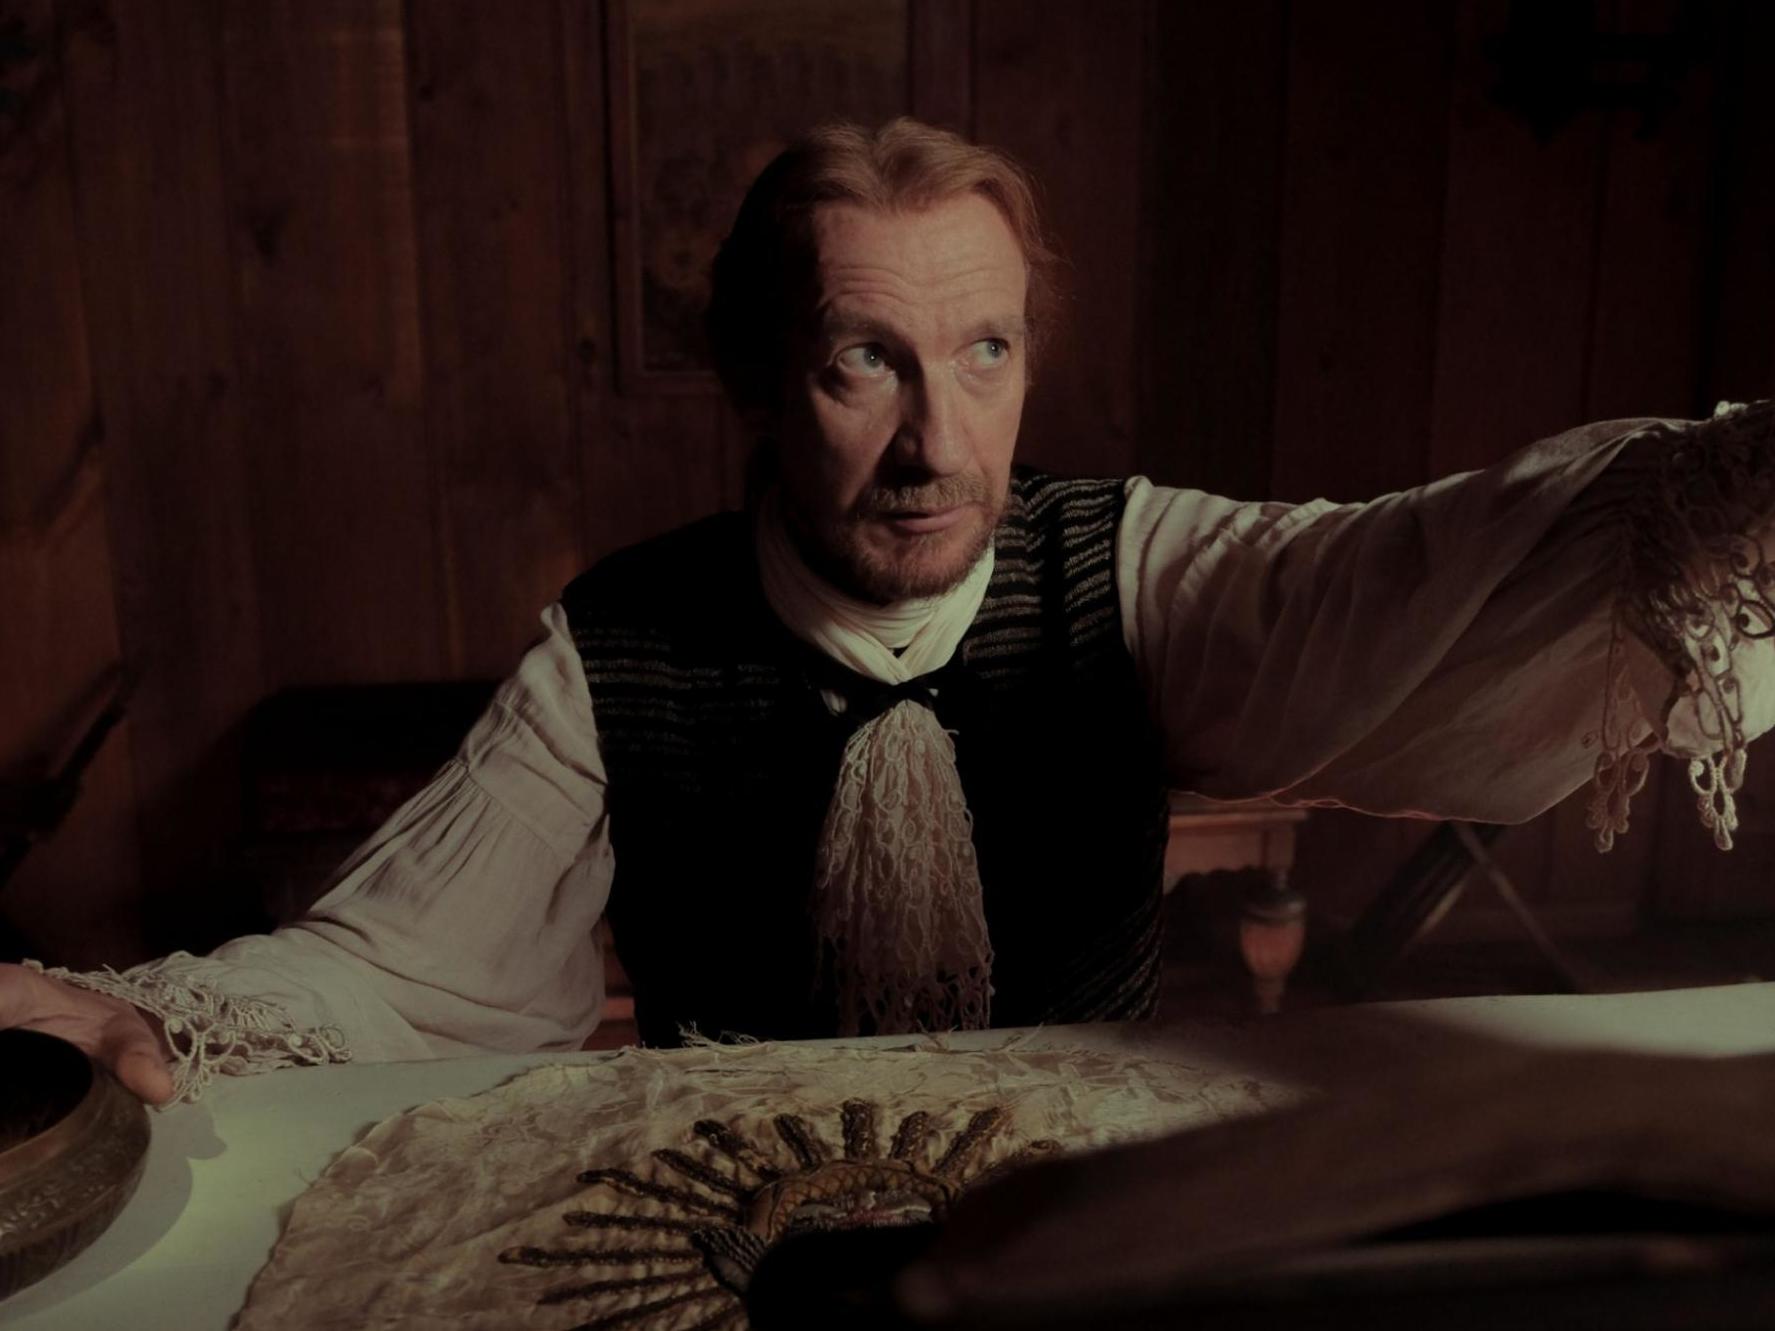 Thewlis as Monsieur Claude Trepagny in ‘Barkskins’